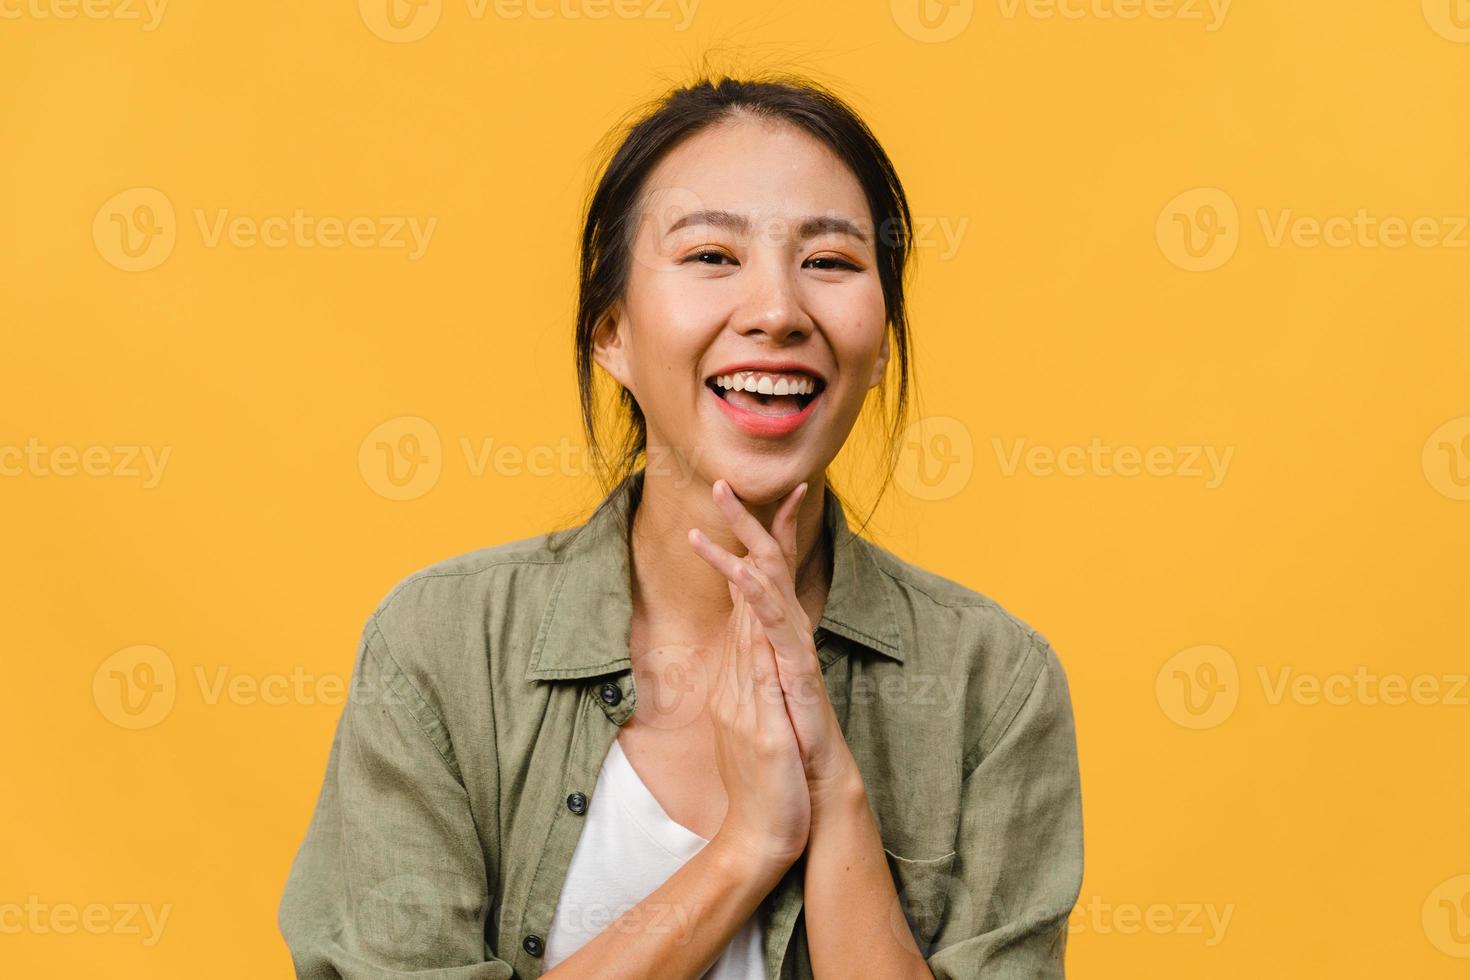 jovem asiática com expressão positiva, sorriso largo, vestida com roupas casuais e olhando para a câmera sobre fundo amarelo. feliz adorável feliz mulher alegra sucesso. conceito de expressão facial. foto